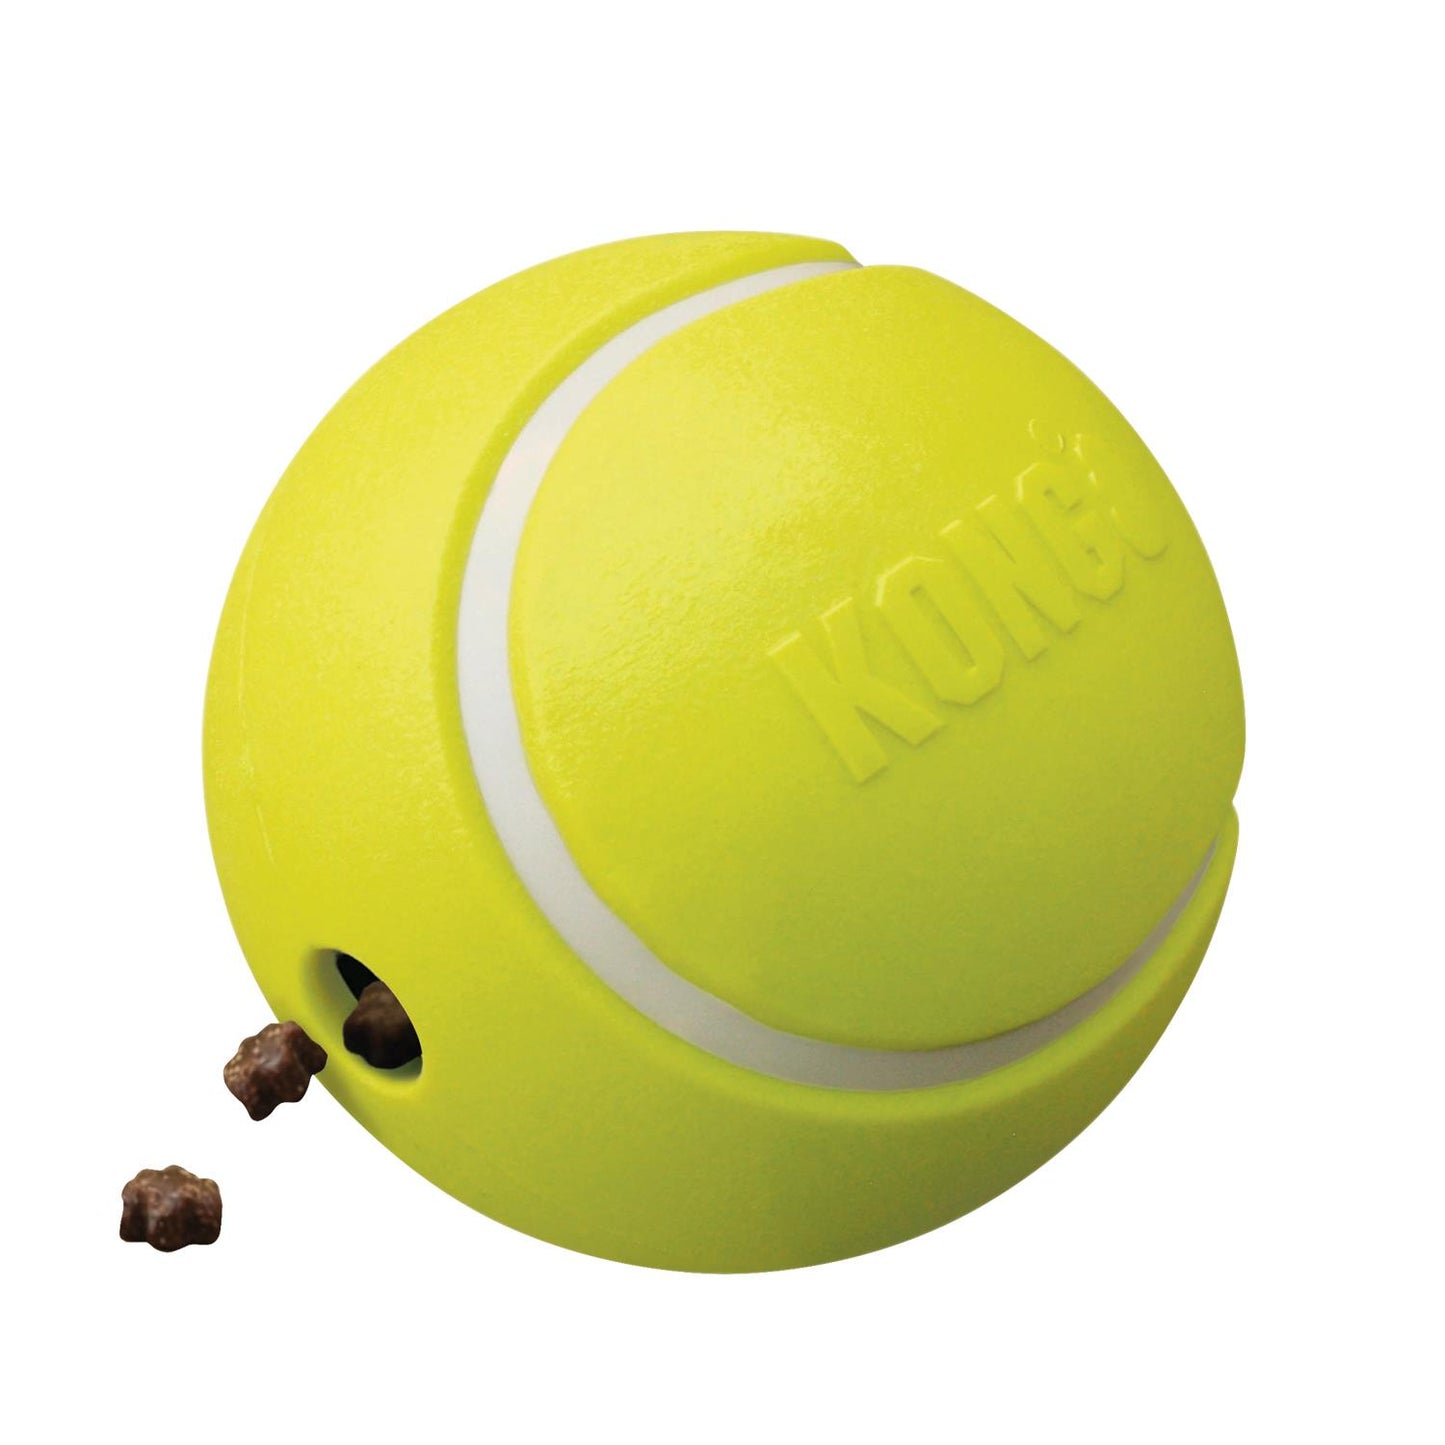 KONG juguete perro pelota rewards tennis t-l 14cm